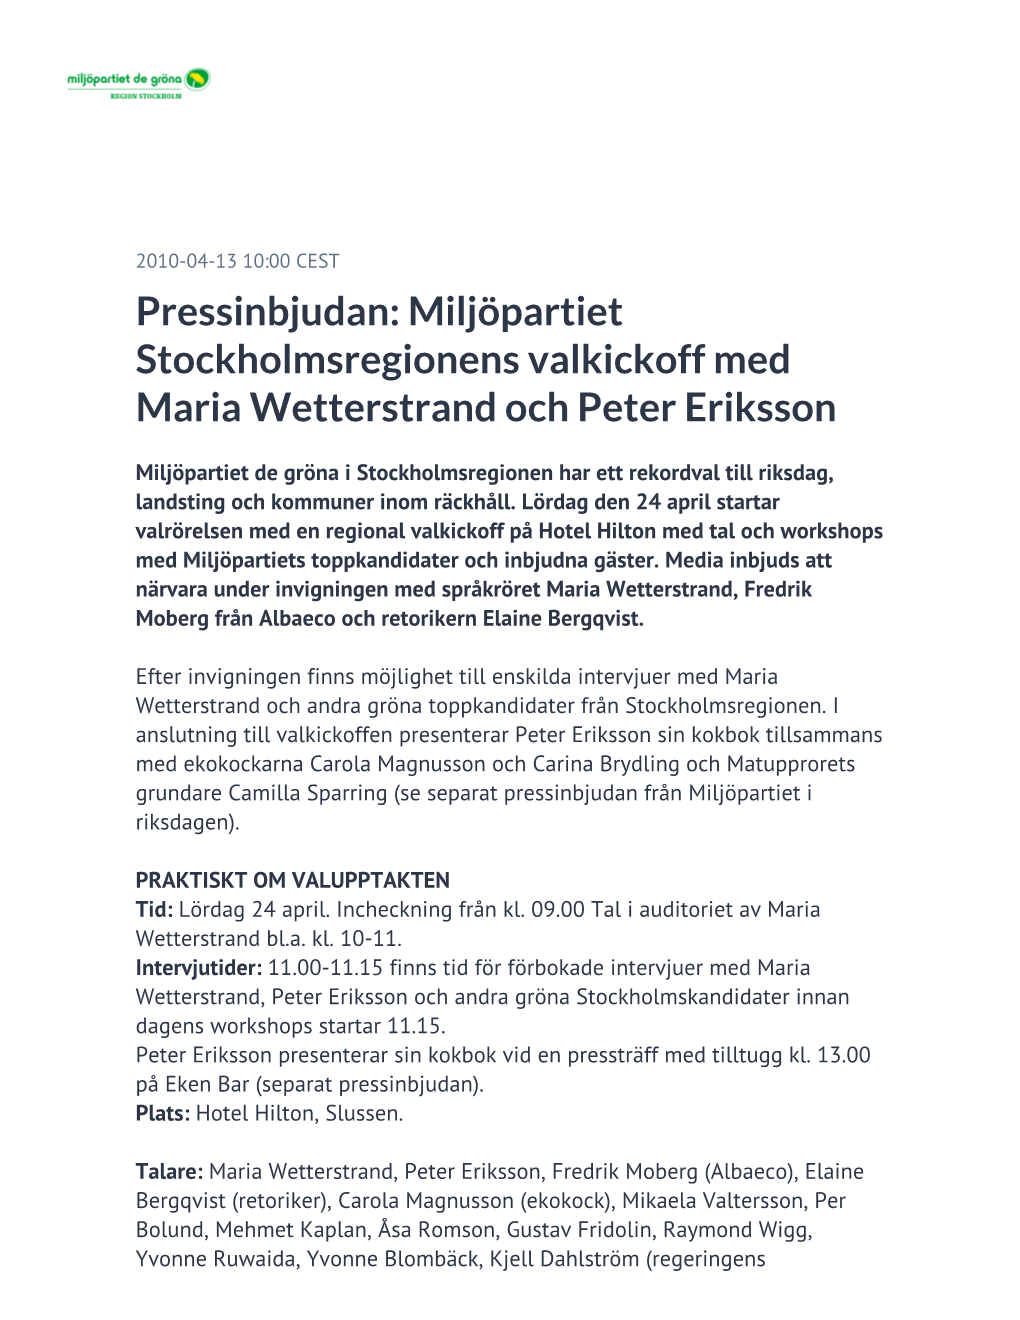 Pressinbjudan: Miljöpartiet Stockholmsregionens Valkickoff Med Maria Wetterstrand Och Peter Eriksson